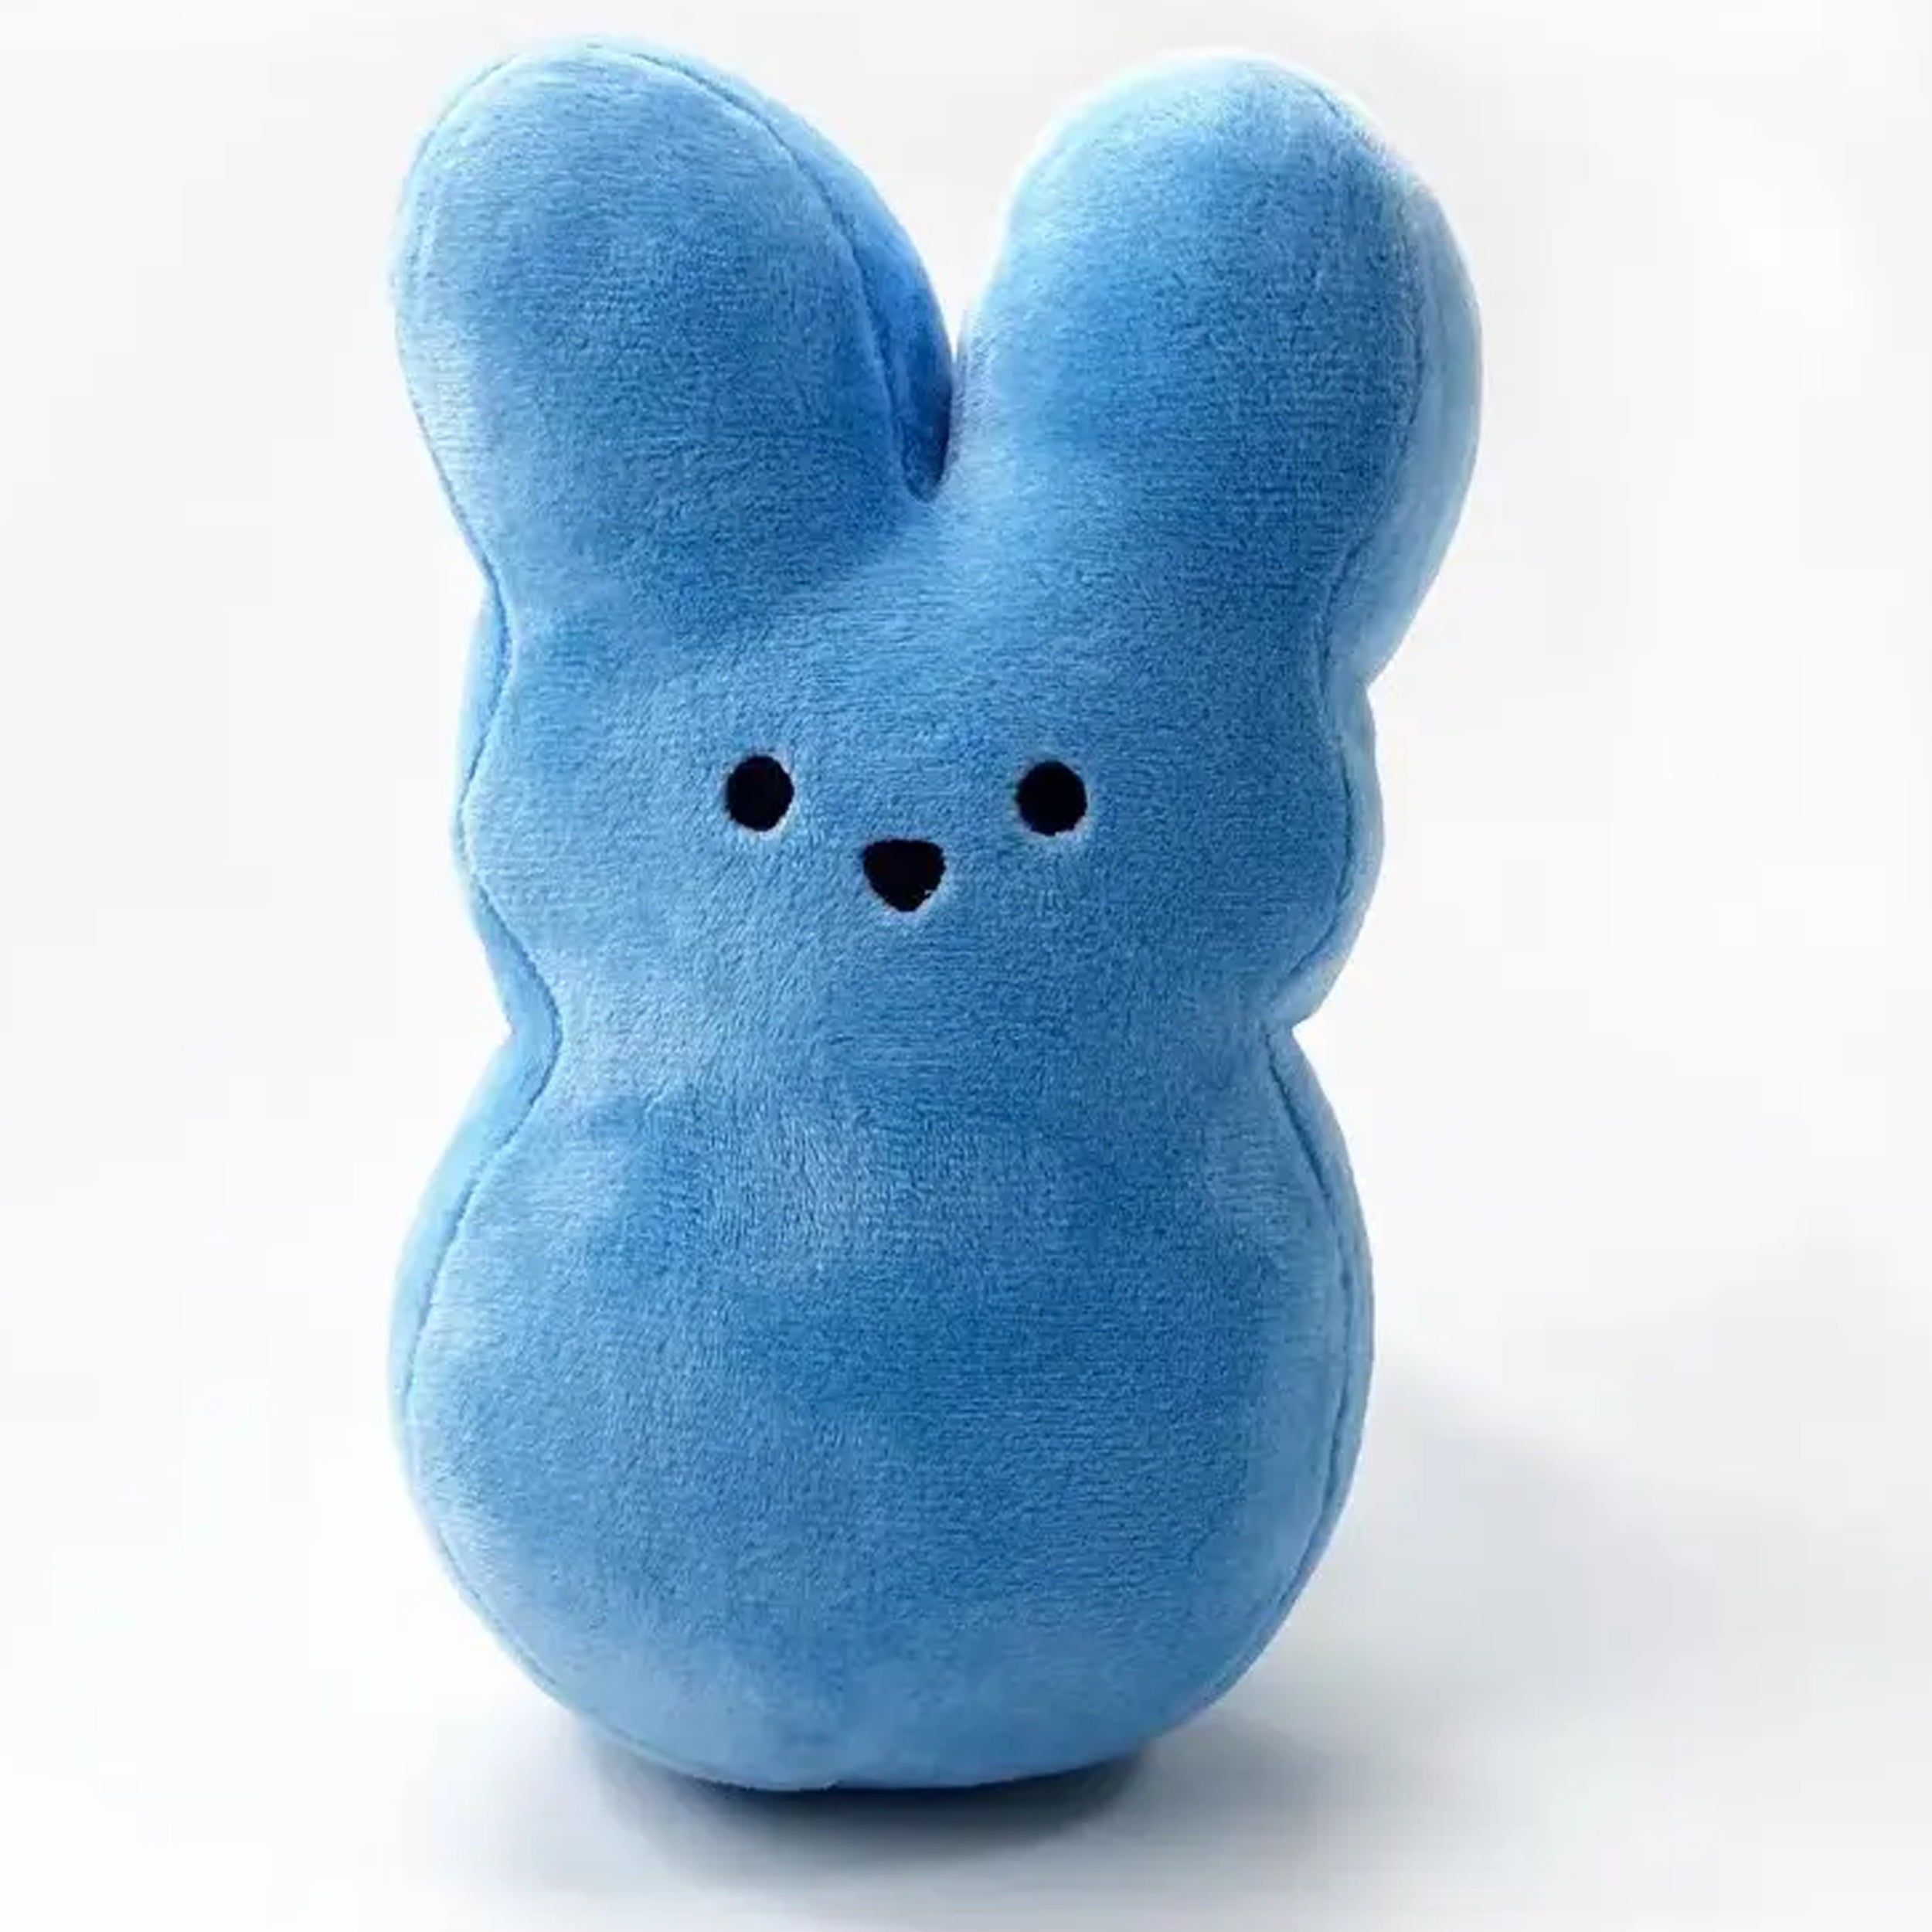 Easter Bunny Peeps Plush Toys